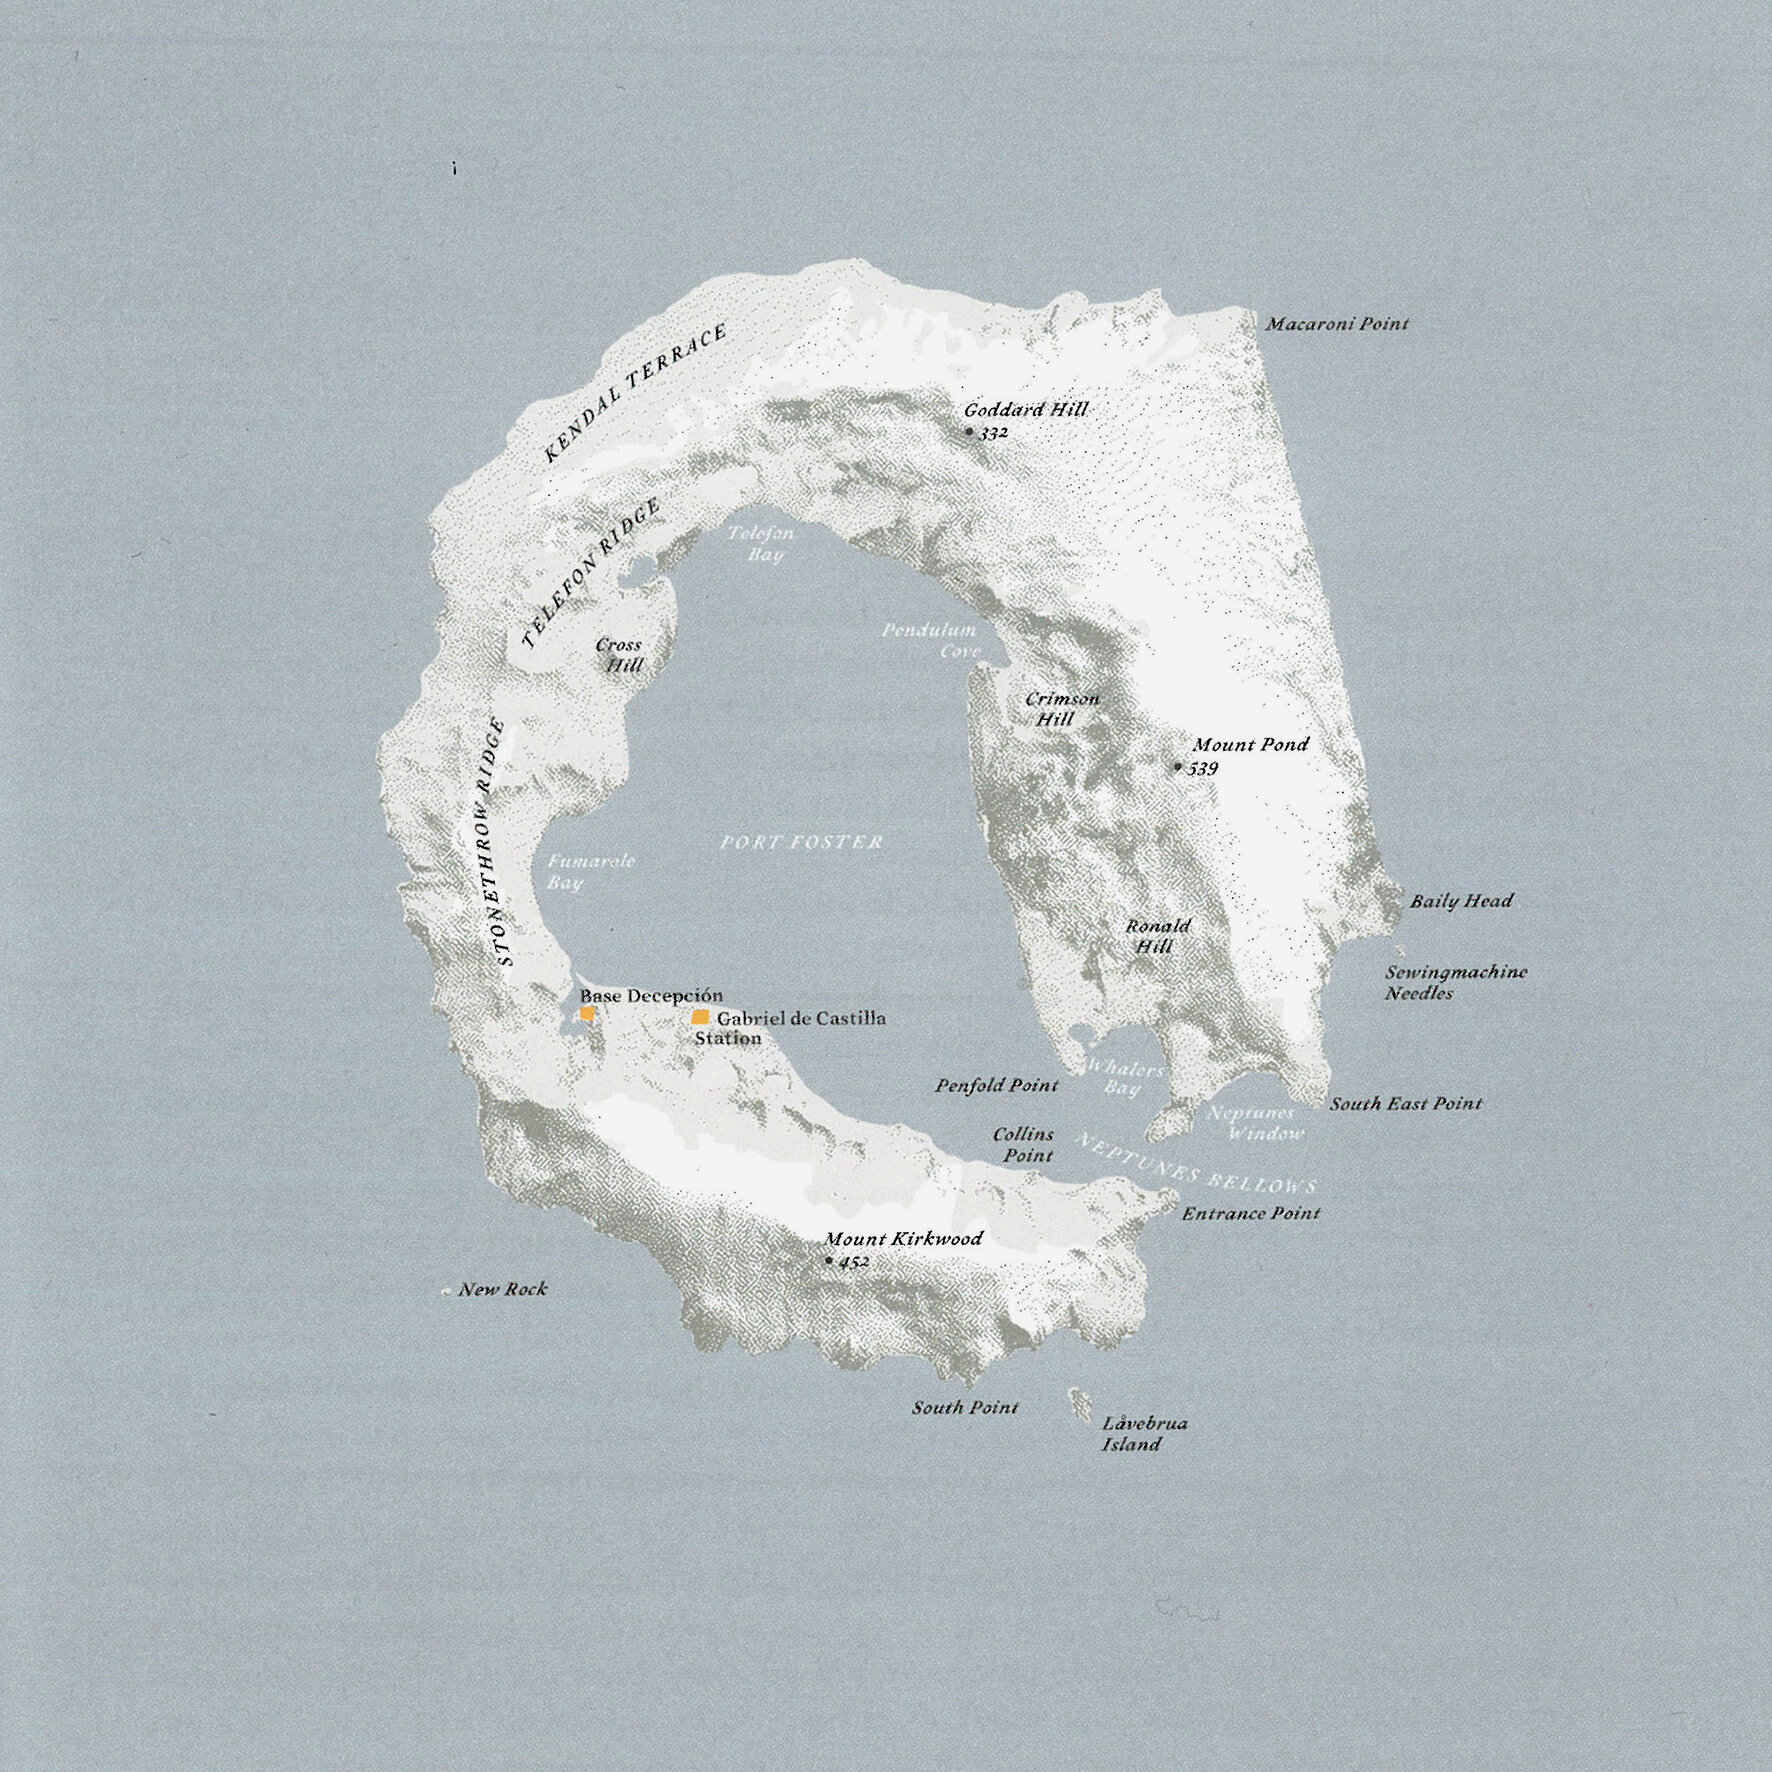  Illa Engany  Illes Shetland del Sud (Antàrtida) - Oceà Antàrtic (62º 57’ S - 60º 38’ O / 98,5 Km2 deshabitada)  Il·lustració: Judith Schalansky, Font: Atlas de Islas Remotas, Capitán Swing · Nørdicalibros 2013 